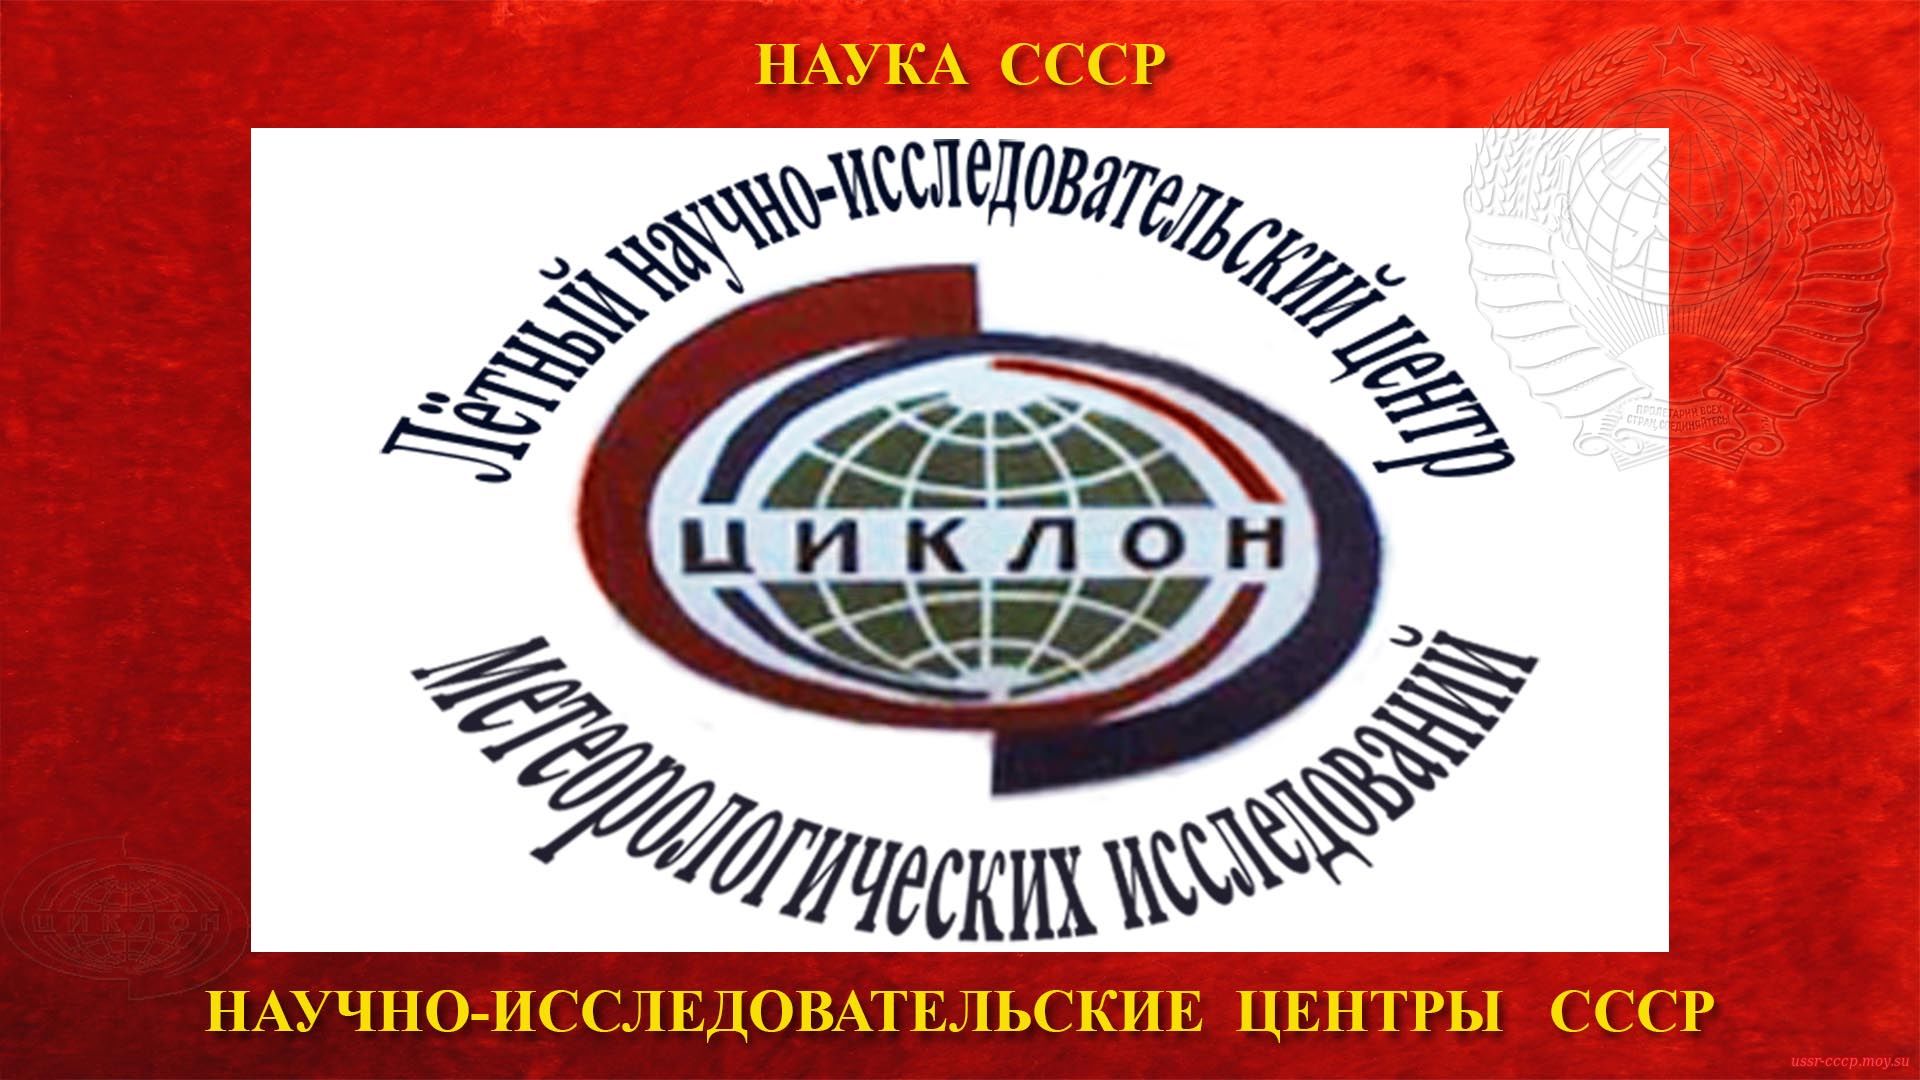 Лётный Научно-Исследовательский Центр метеорологических исследований СССР — ЛНИЦ (1974)